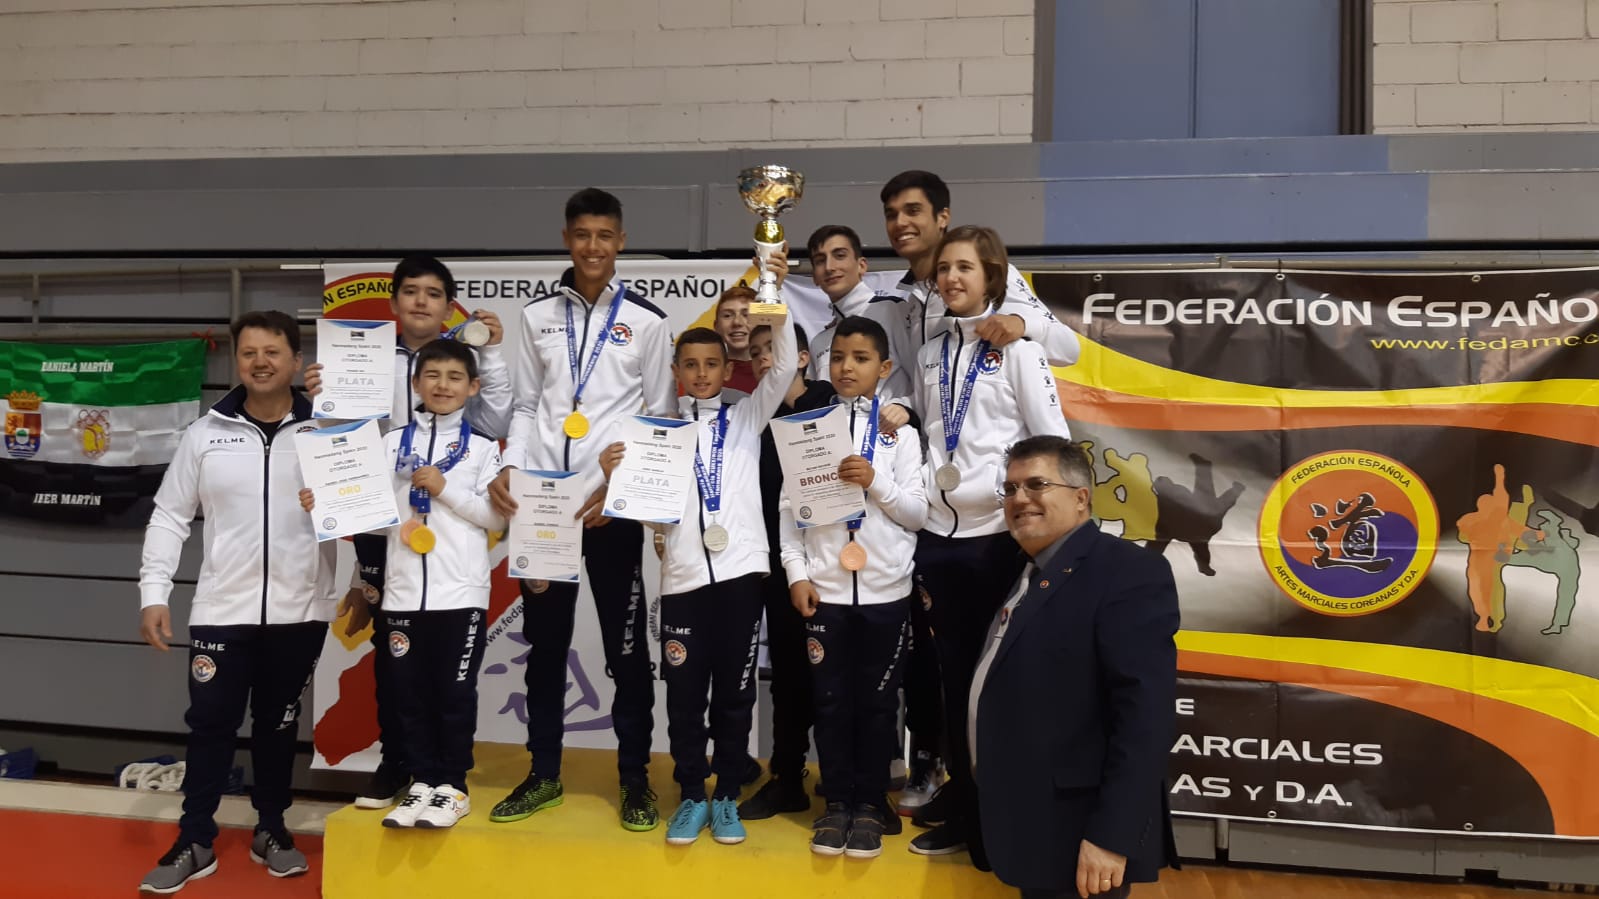 Cinco metales para el taekwondo jumillano en el Open de Murcia